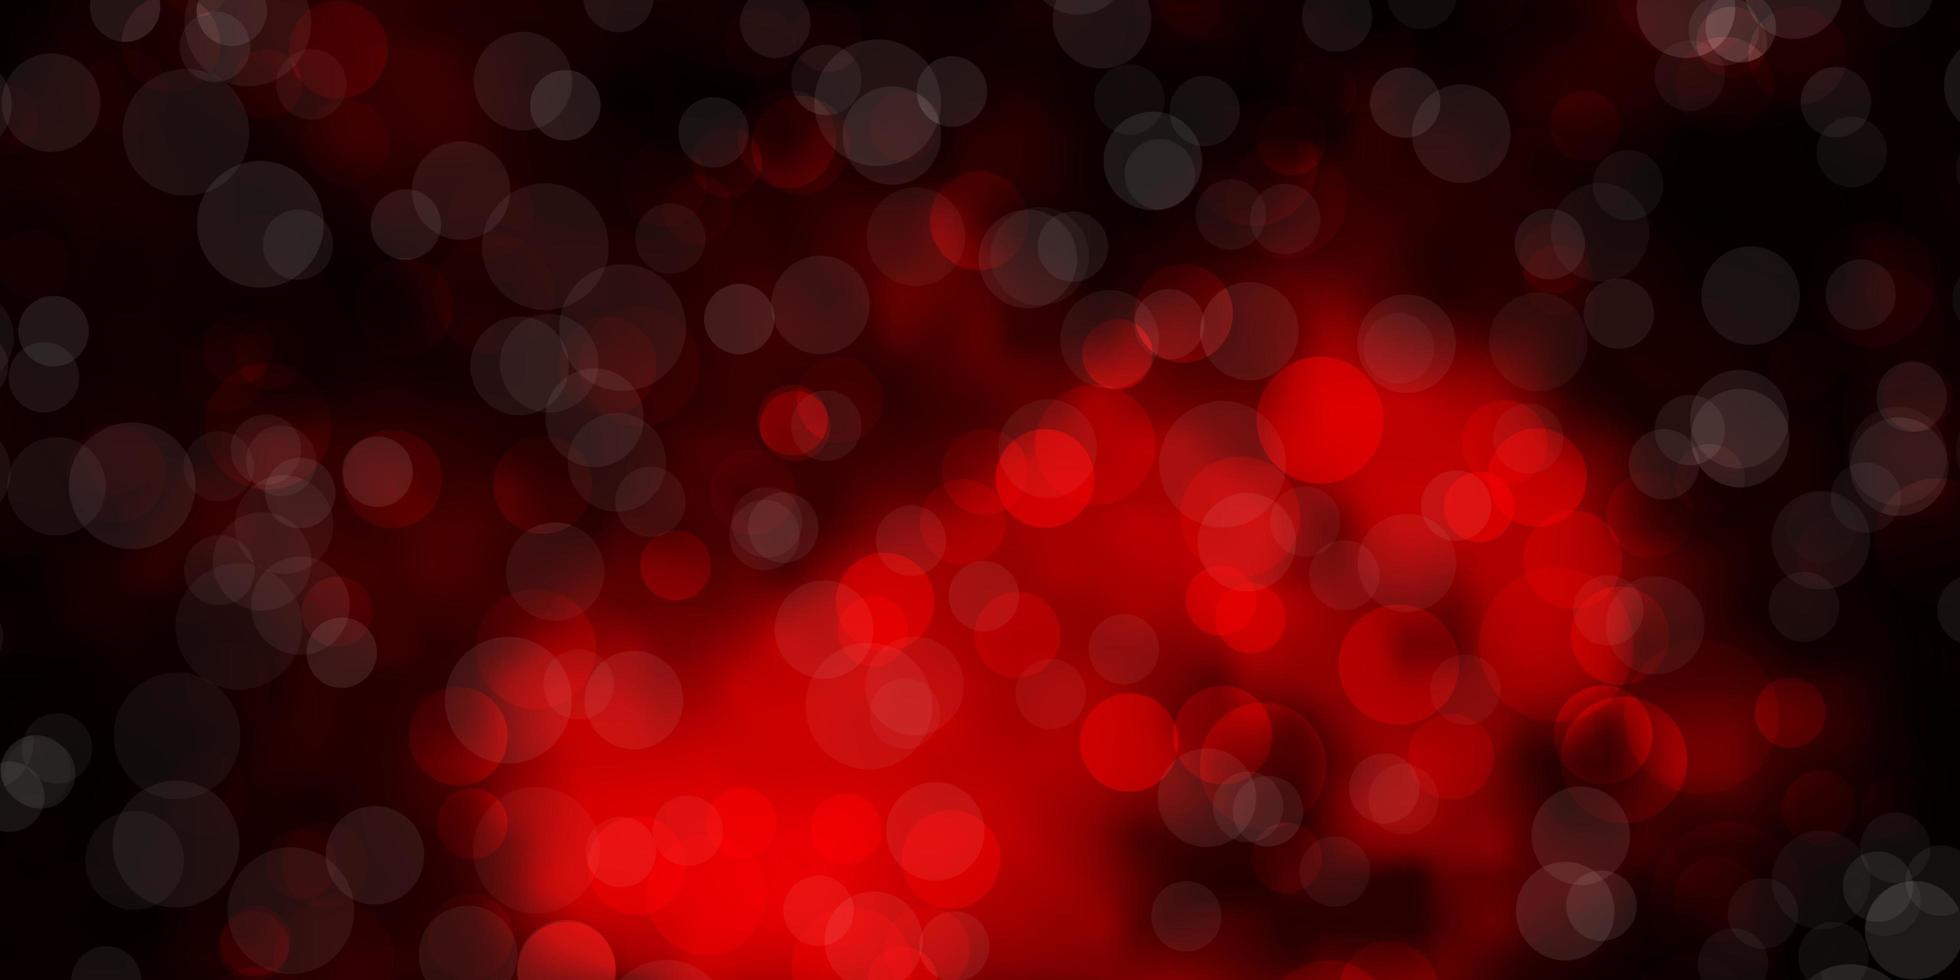 sfondo vettoriale rosso scuro con cerchi dischi colorati astratti su sfondo sfumato semplice nuovo modello per il tuo libro di marca